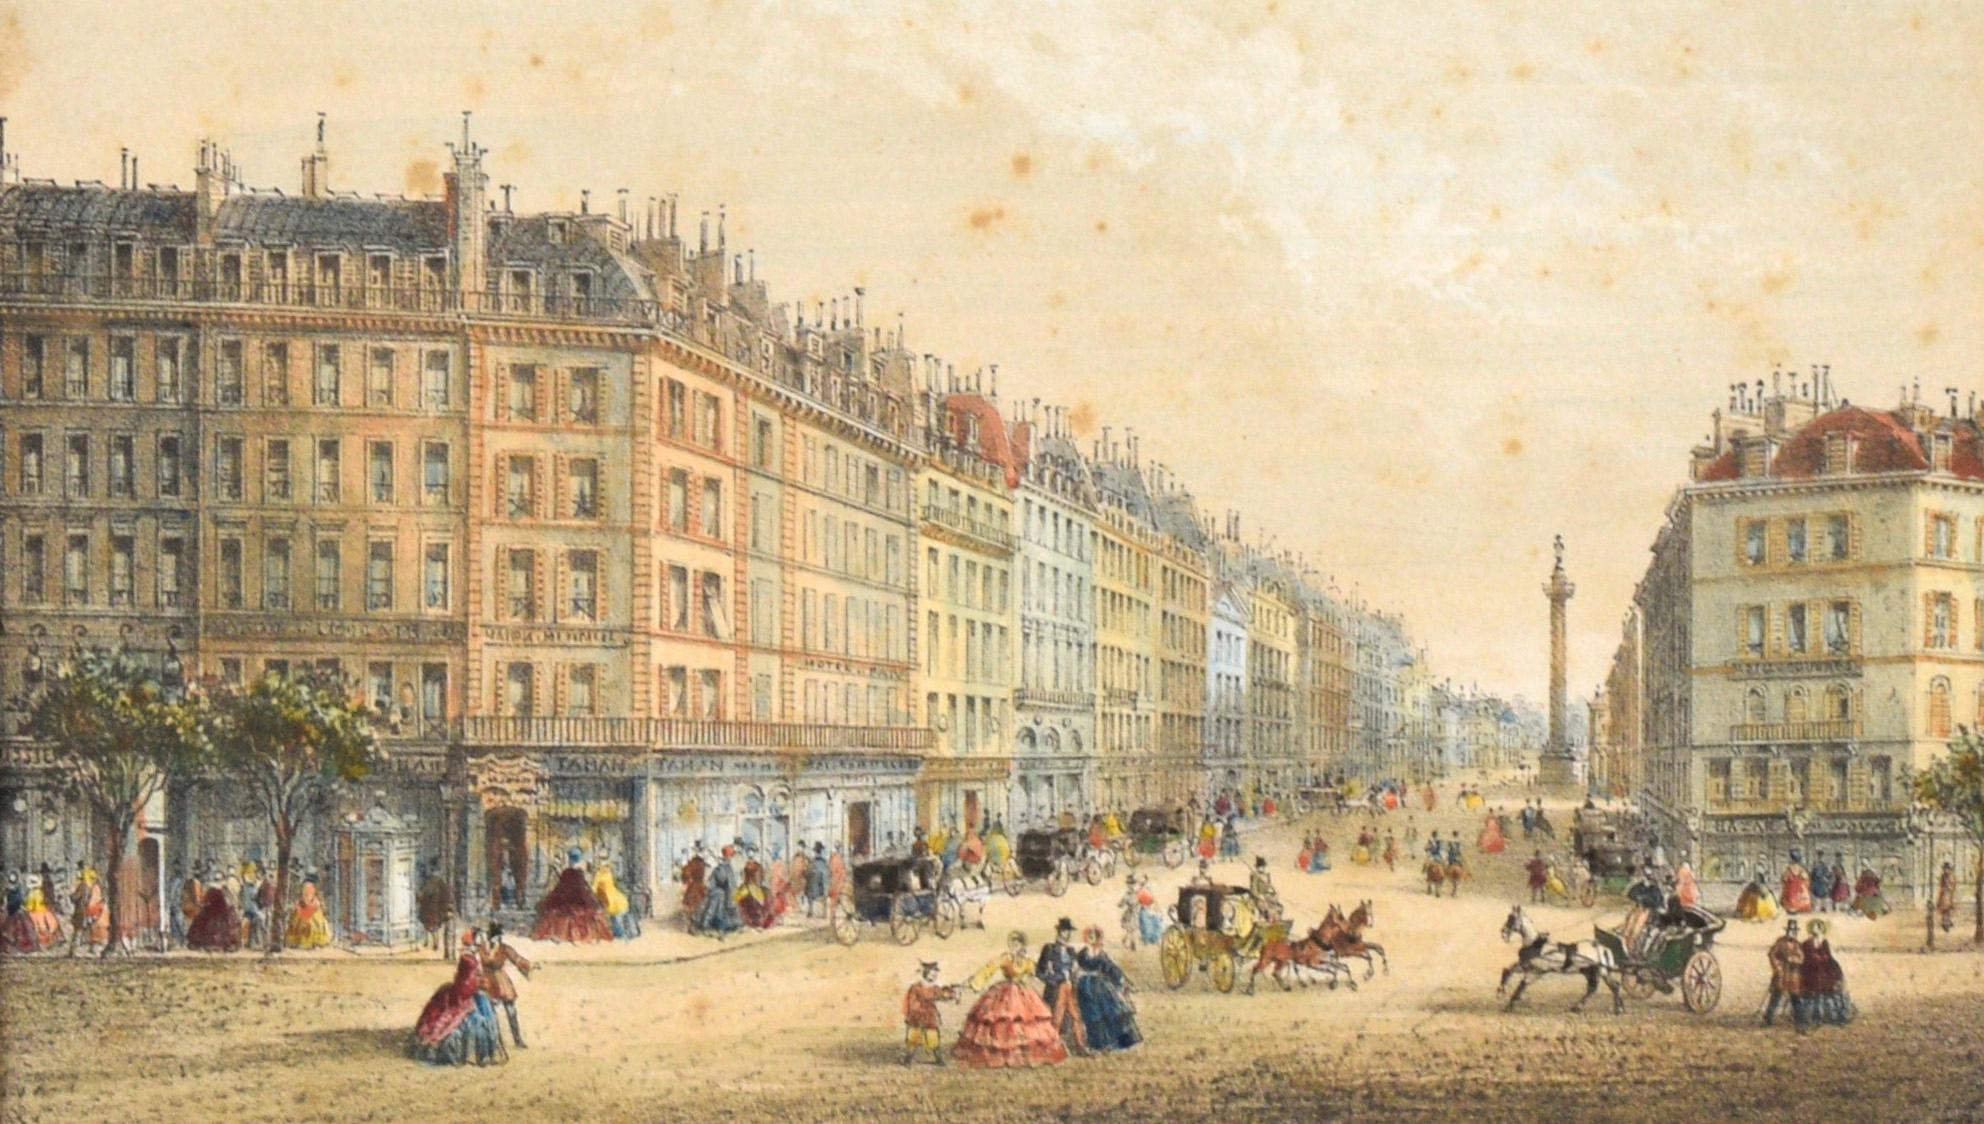 Rue de la Paix, Paris - Hand Colored Lithograph 1845-1860 - Print by Rose-Joseph Lemercier 